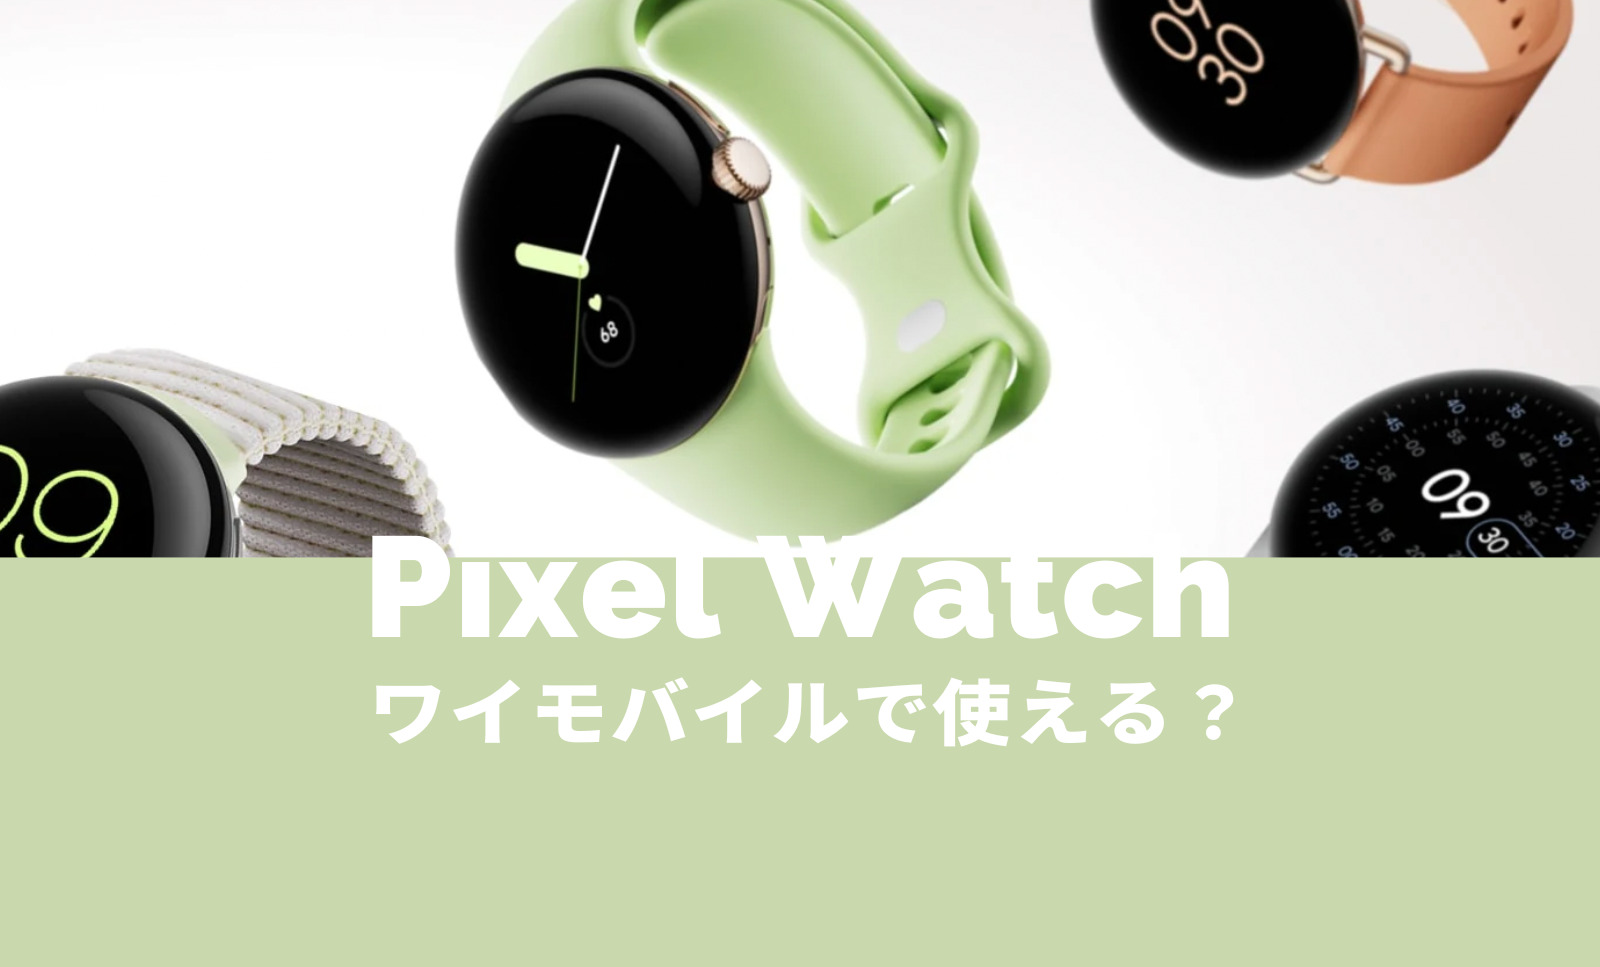 Pixel Watch(ピクセルウォッチ)はワイモバイルで使える？LTEモデル発売や販売は？【Google】のサムネイル画像